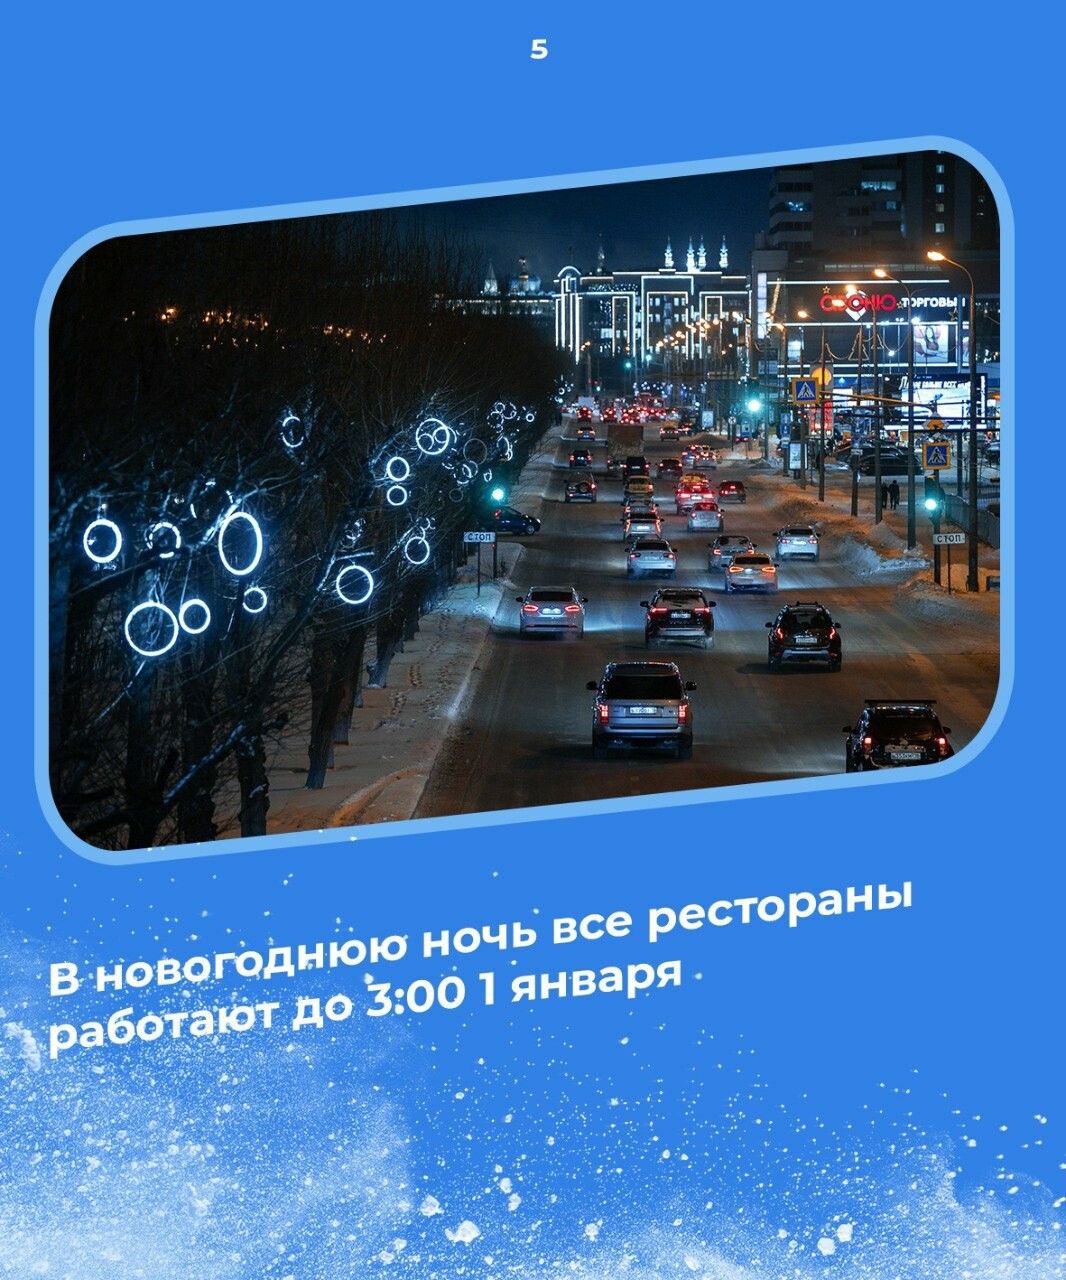 Столица Татарстана подтверждает репутацию популярного места для путешествий на Новый год